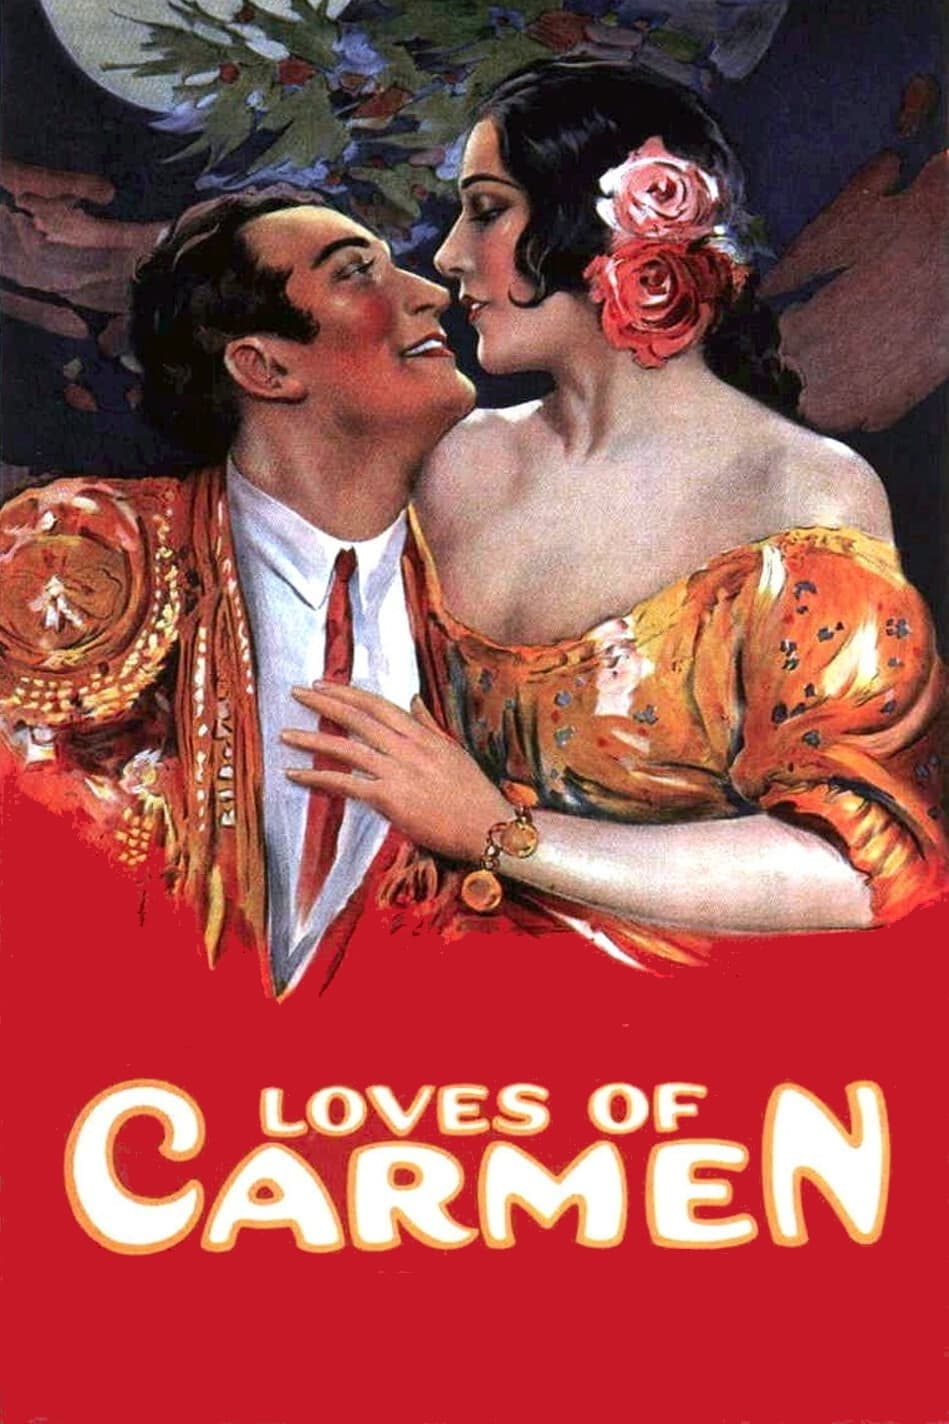 The Loves of Carmen (1927)